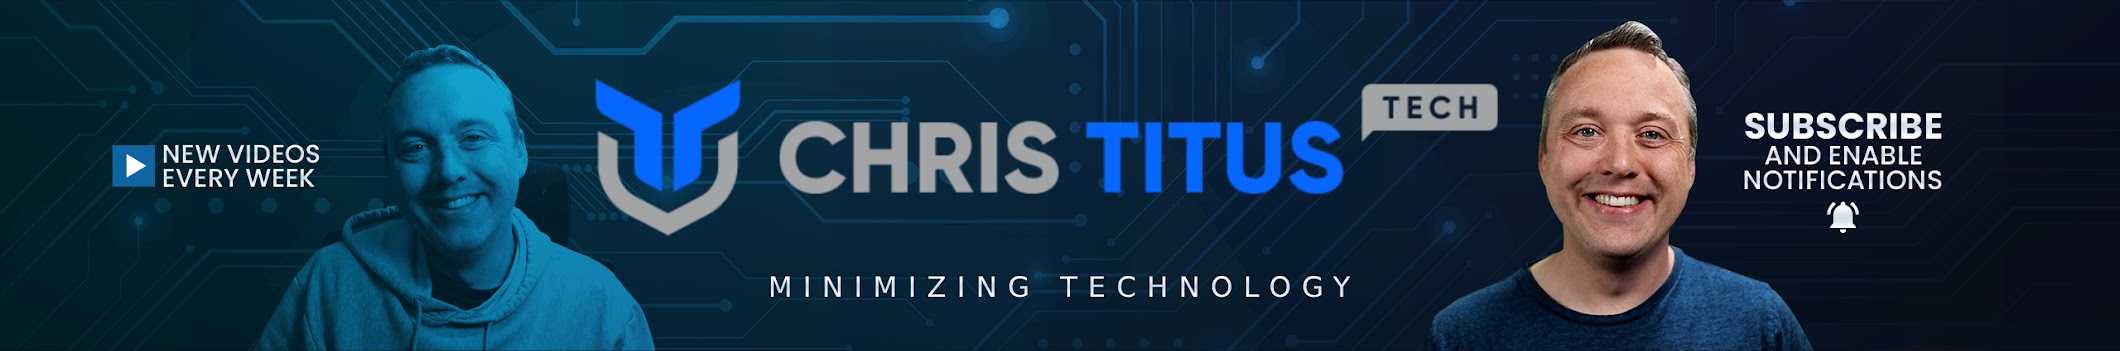 Chris Titus Tech